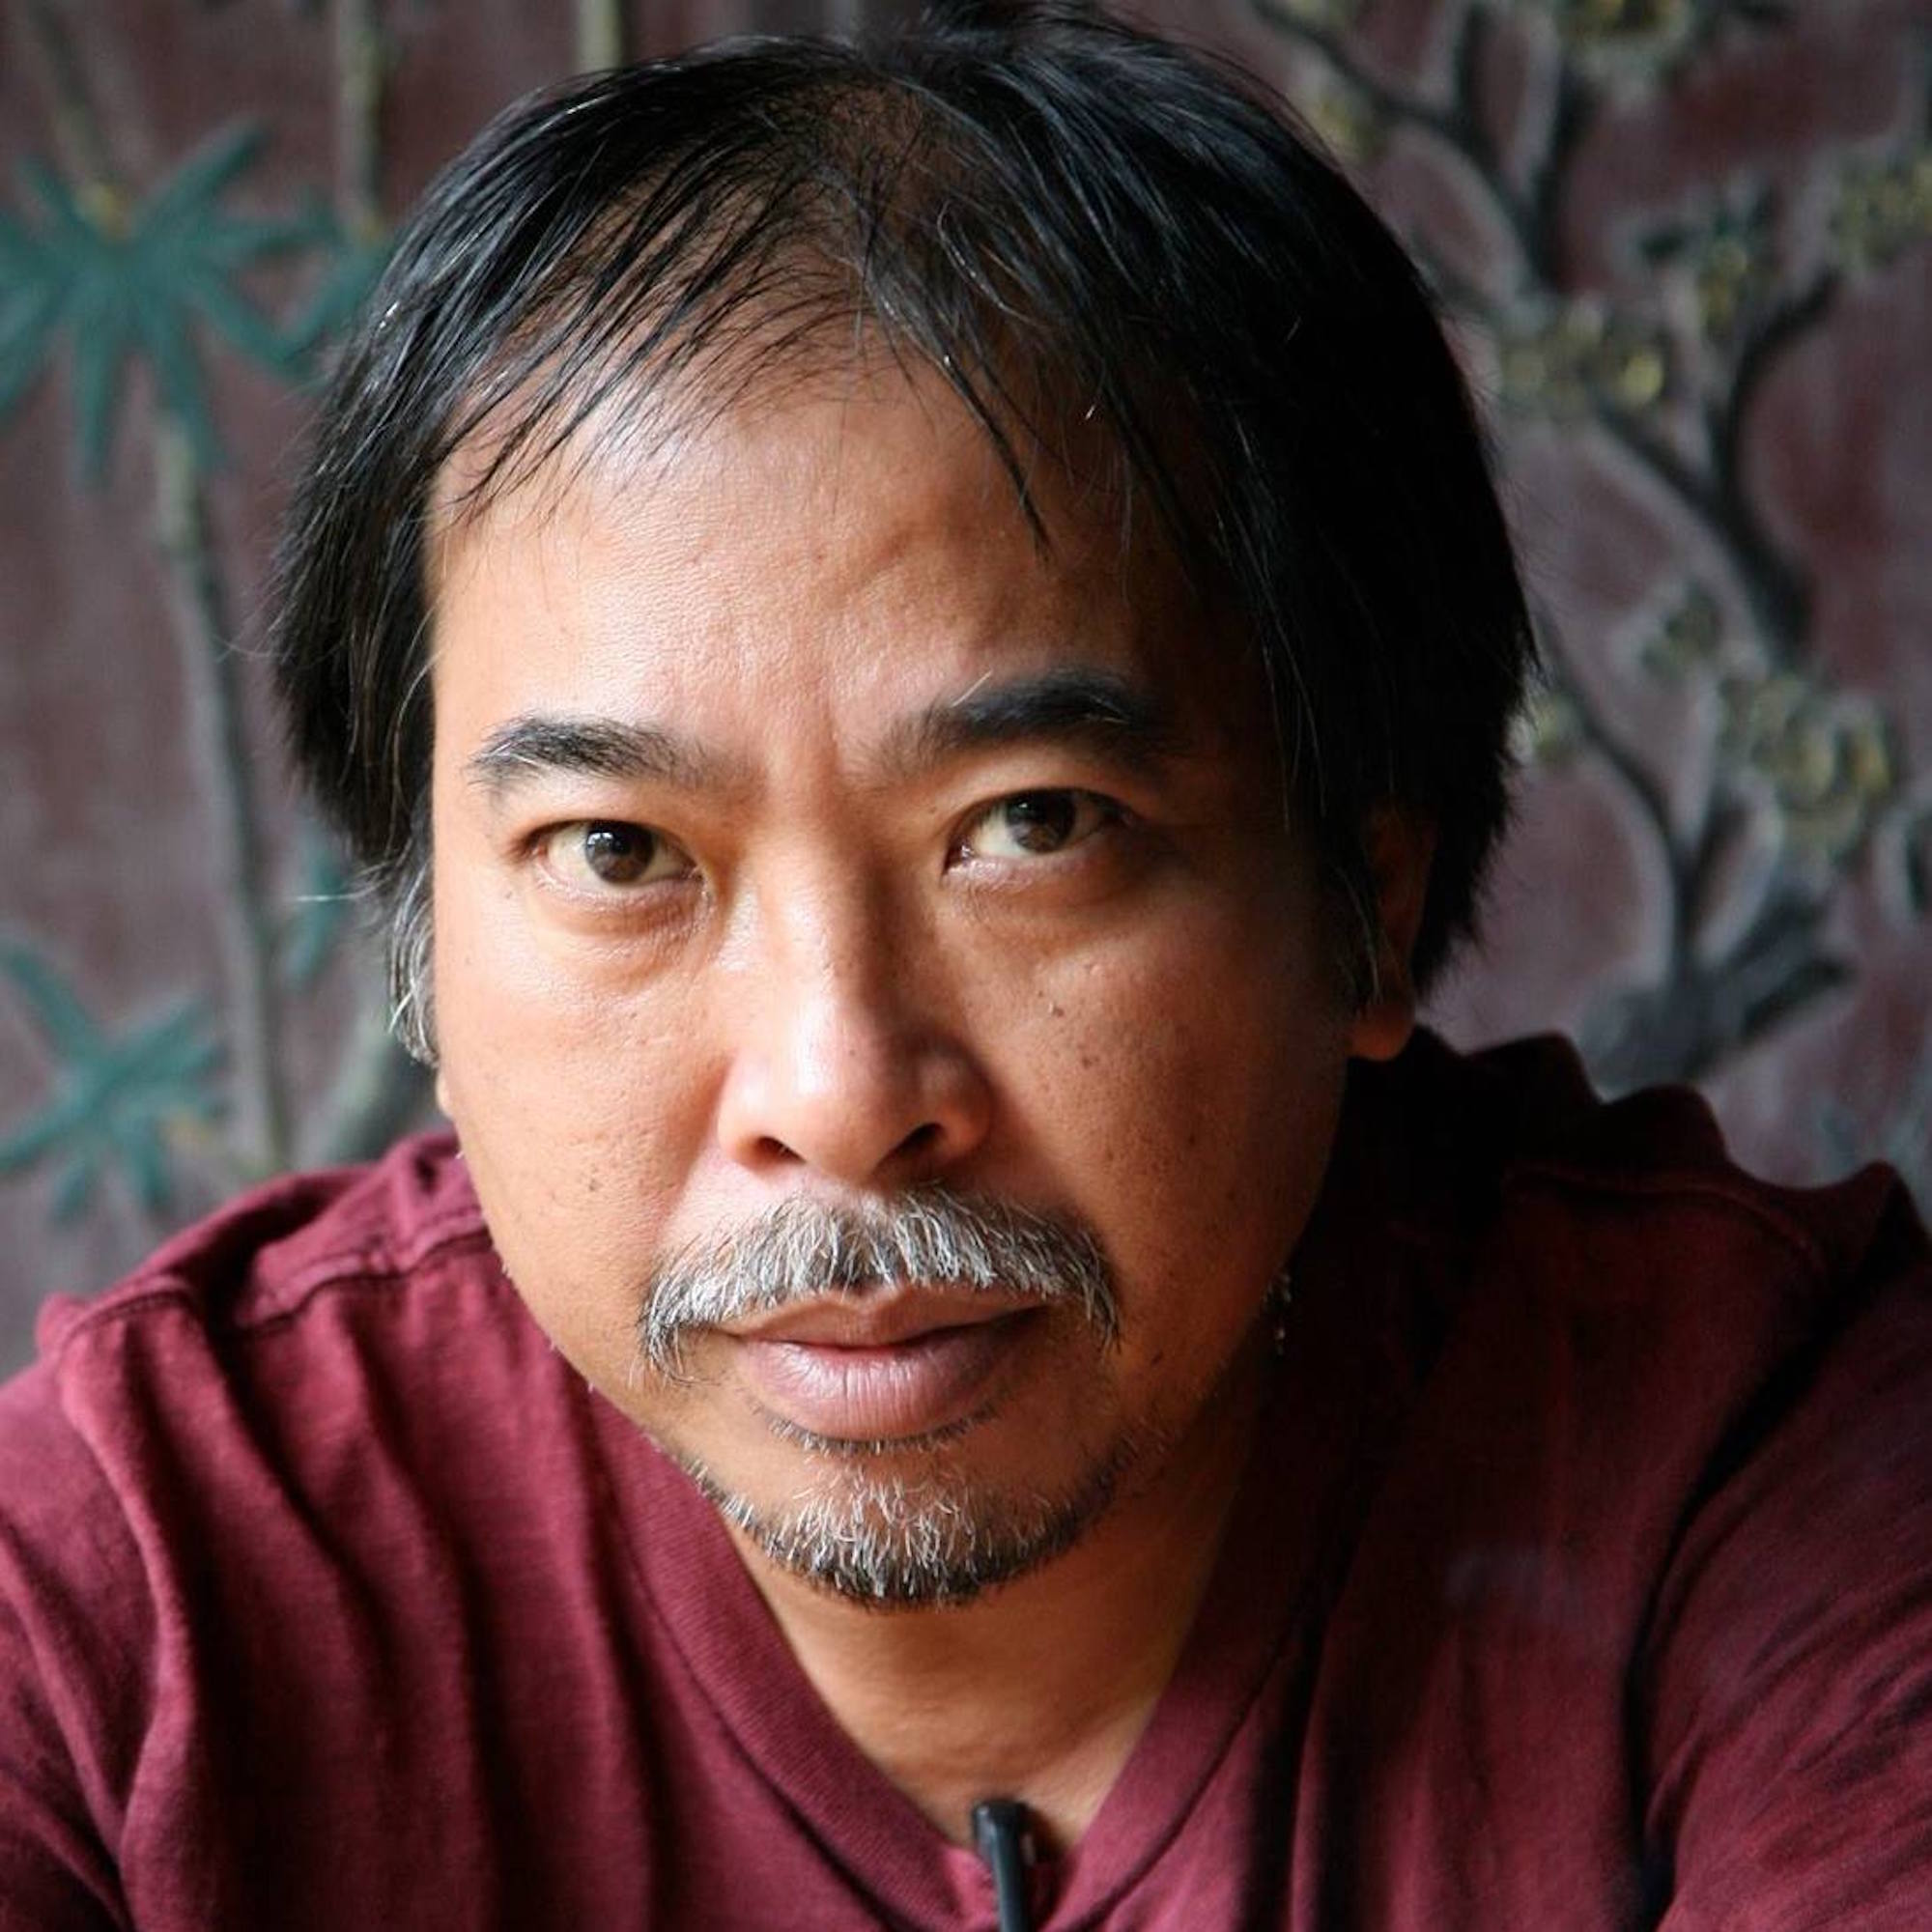 Nhà thơ Nguyễn Quang Thiều. (Ảnh: Nhân vật cung cấp)